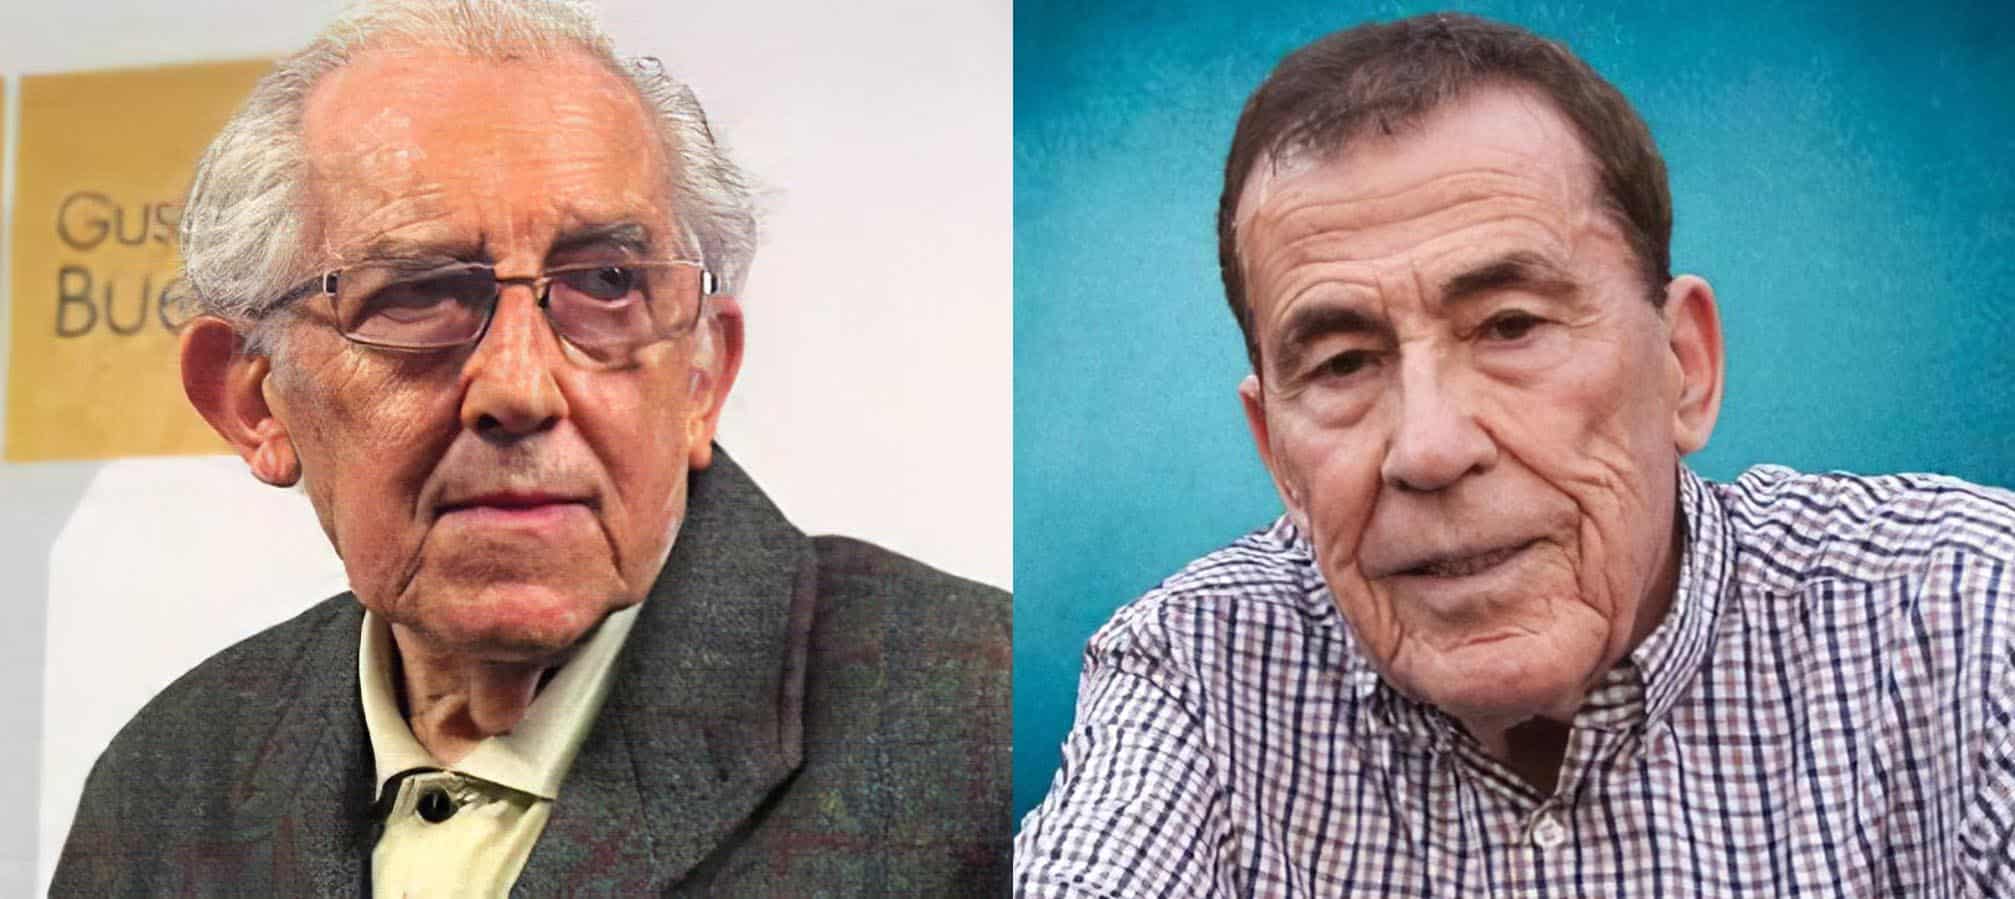 Gustavo Bueno y Fernando Sánchez Dragó, dos hombres que veían la realidad más allá de las palabras